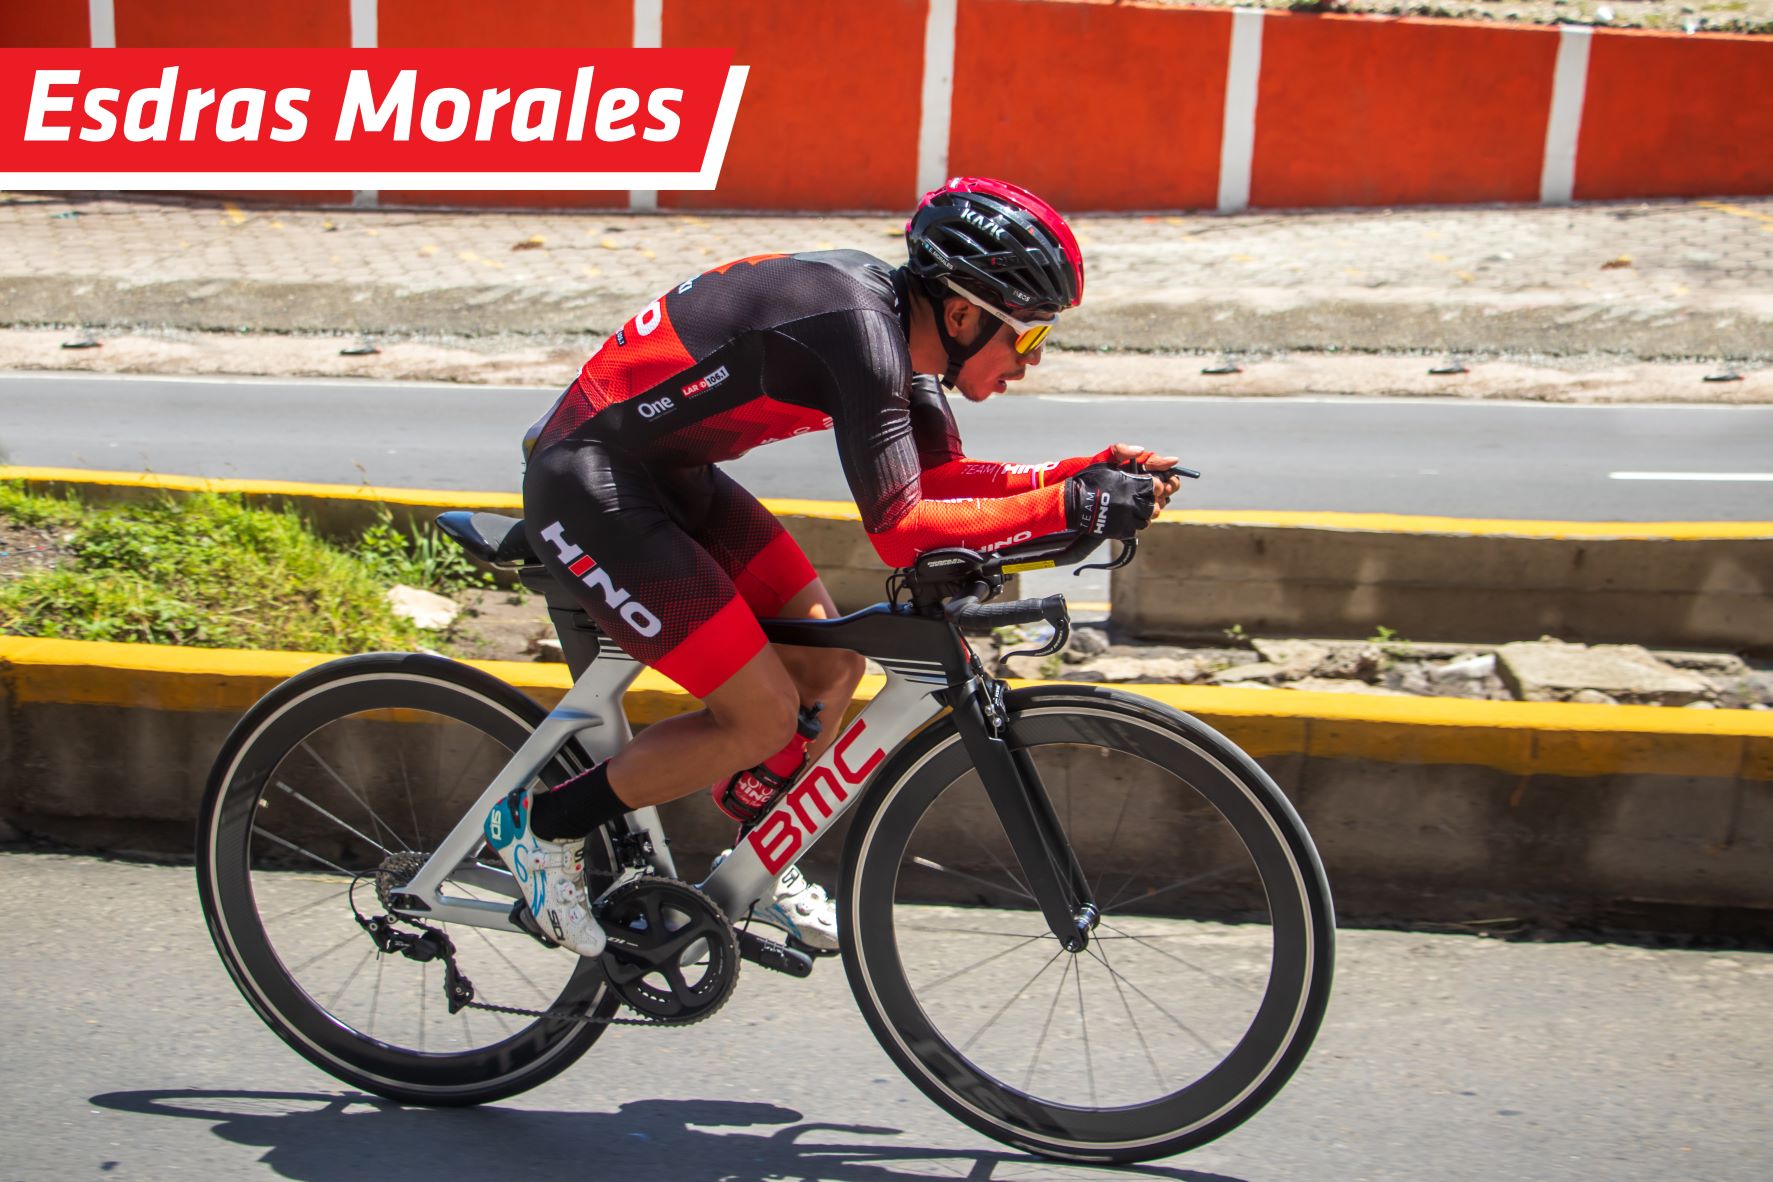 Historia de un campeón: Esdras Morales